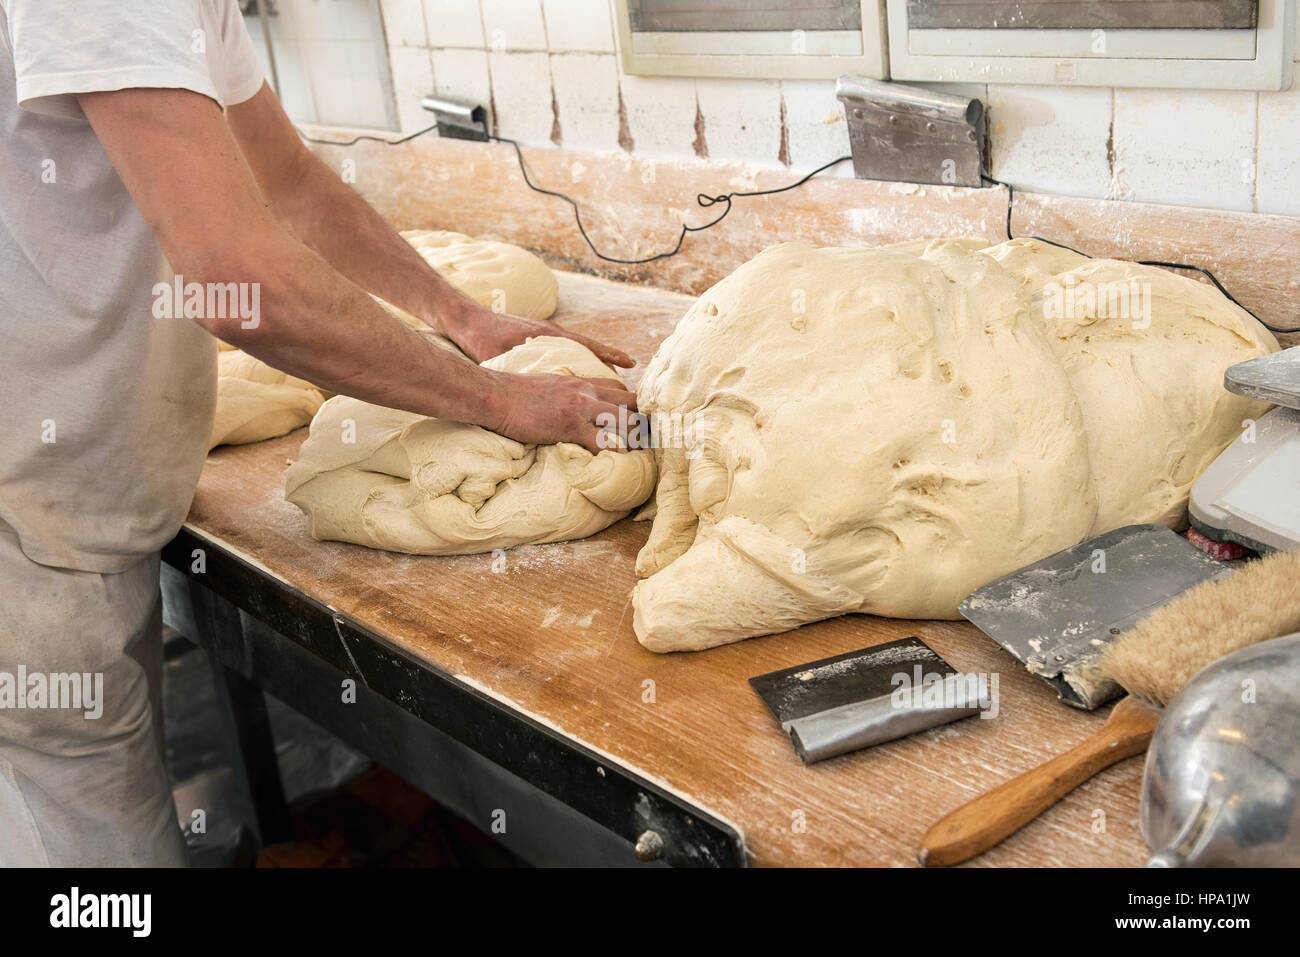 Homme baker mains pétrissant la pâte pour la fabrication du pain dans une boulangerie Banque D'Images